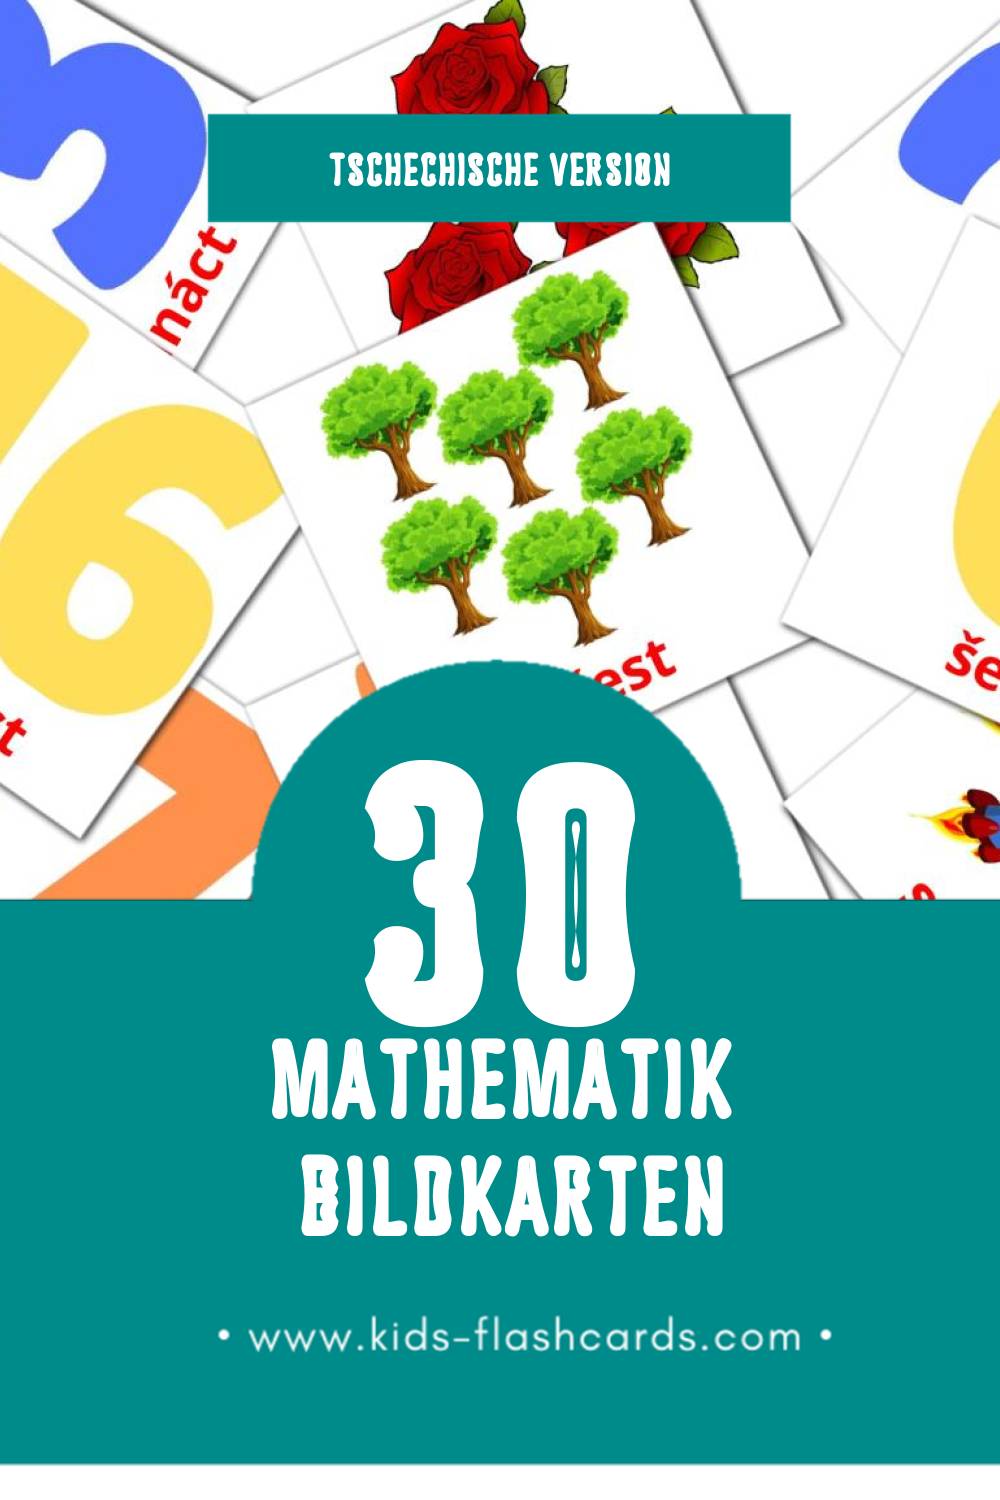 Visual Matematika Flashcards für Kleinkinder (30 Karten in Tschechisch)